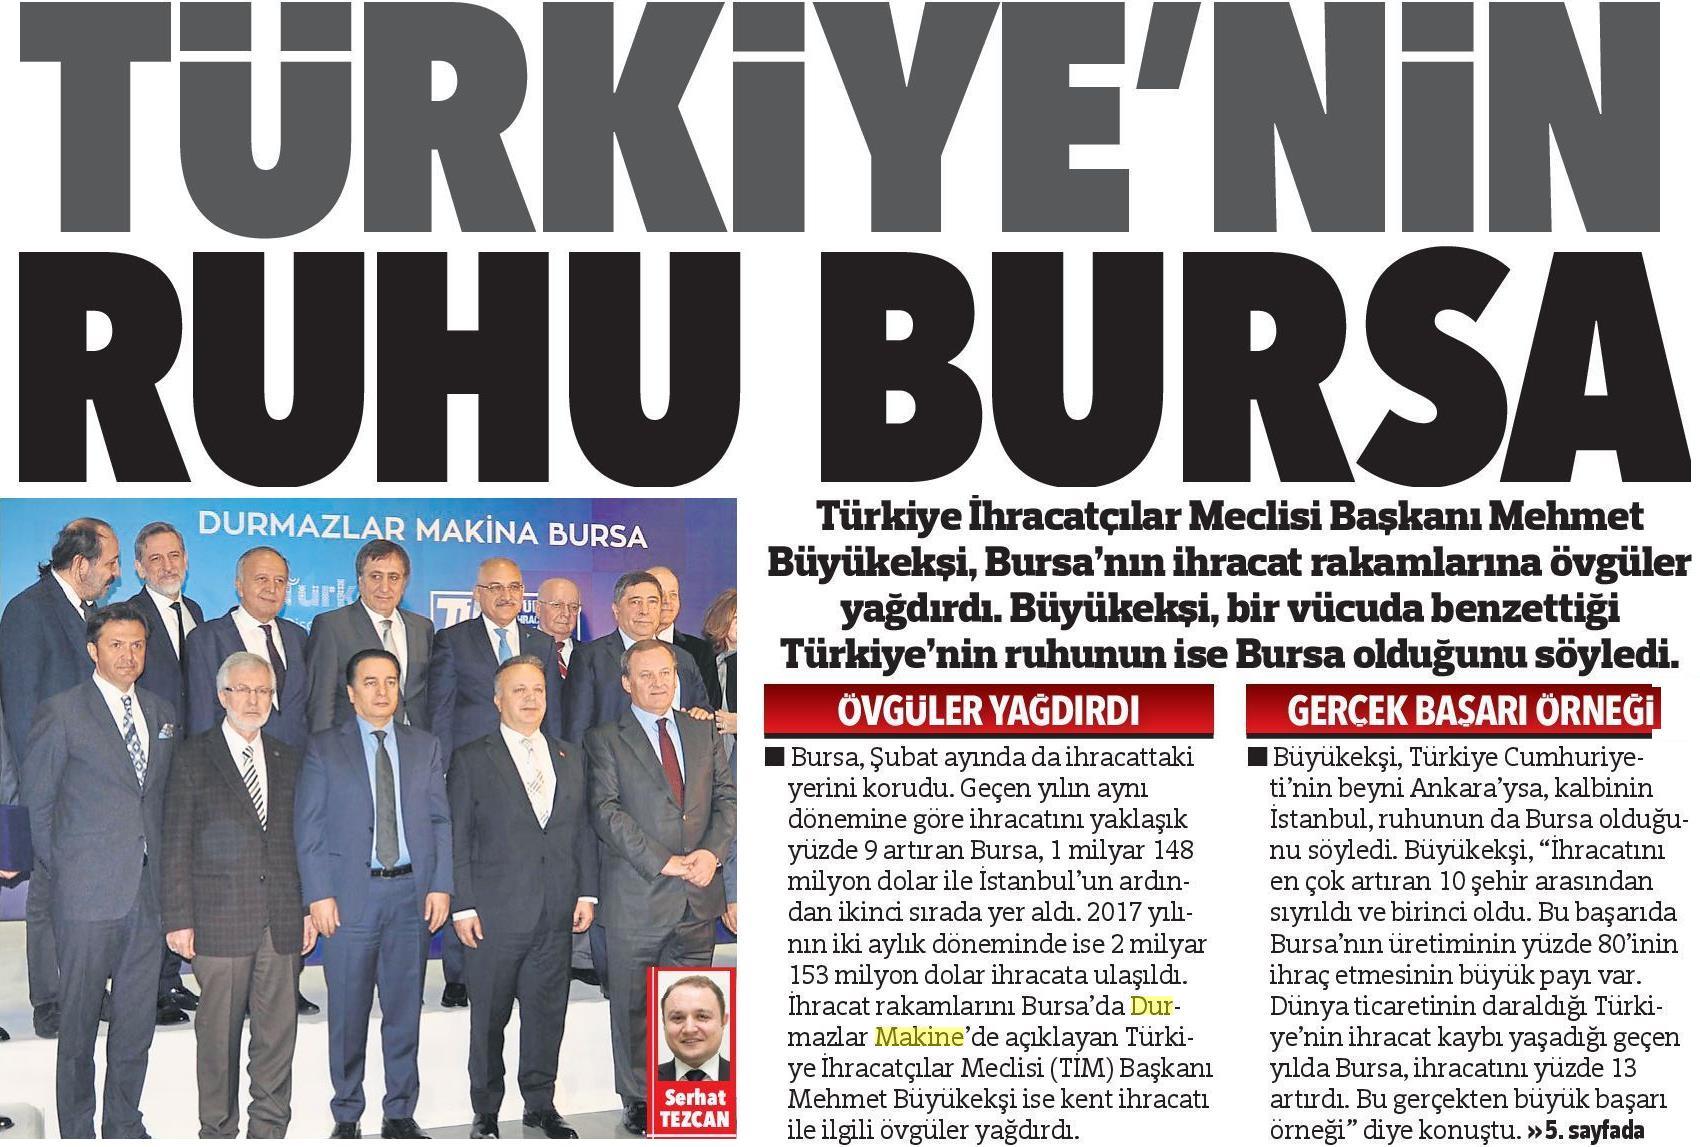 El espíritu de Turquía Bursa